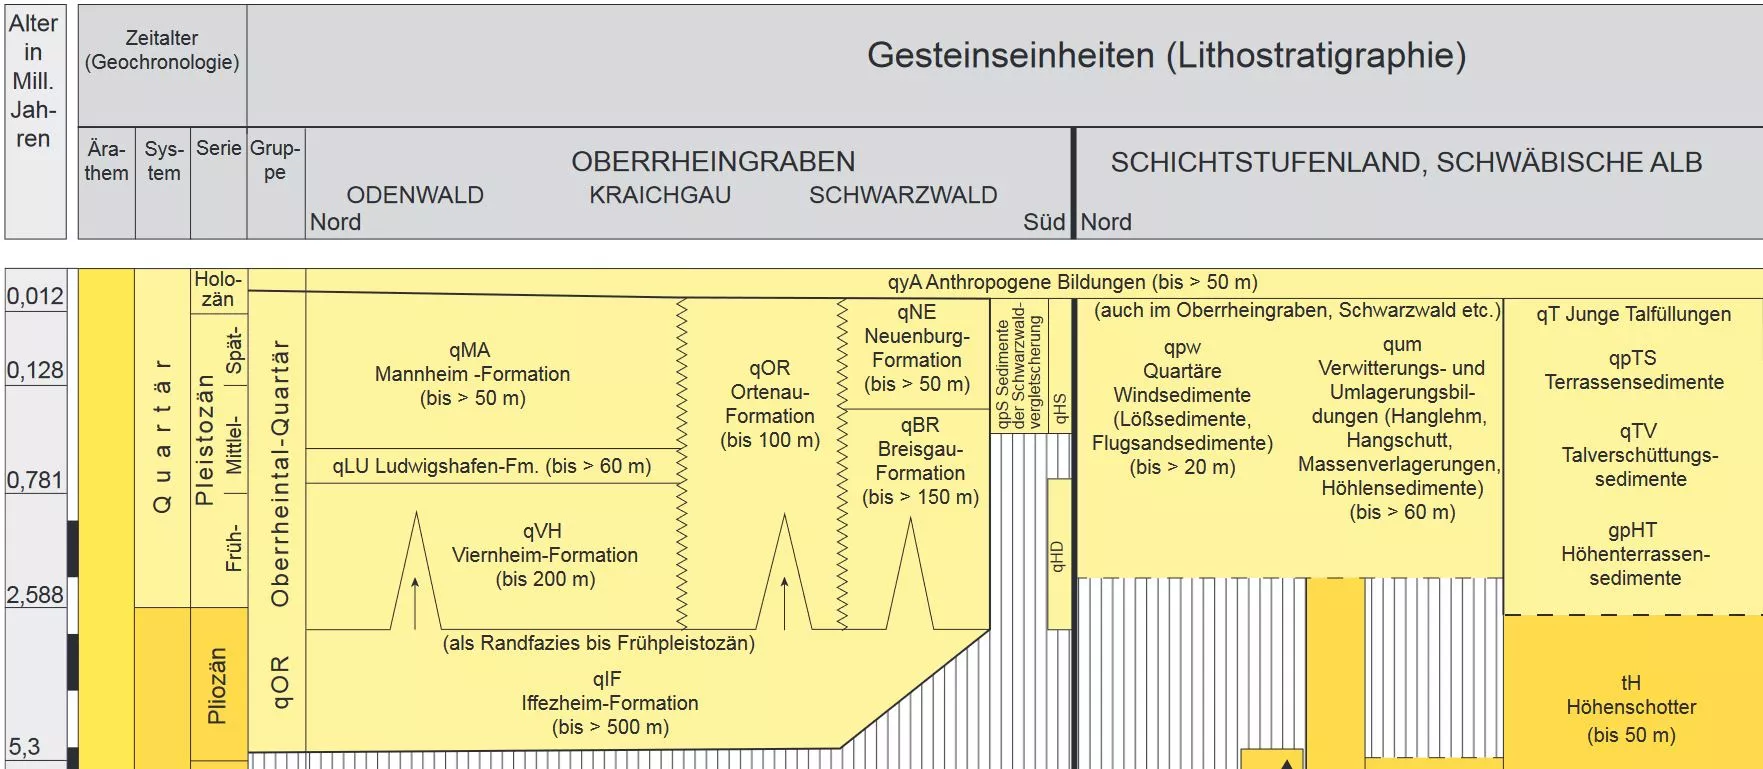 Ausschnitt aus der Geologischen Übersicht der Schichtenfolge (Lithostratigraphie) in Baden-Württemberg. Auf der Hochachse ist das Alter aufgetragen, auf der Längsachse ist die Raumgliederung zu sehen.